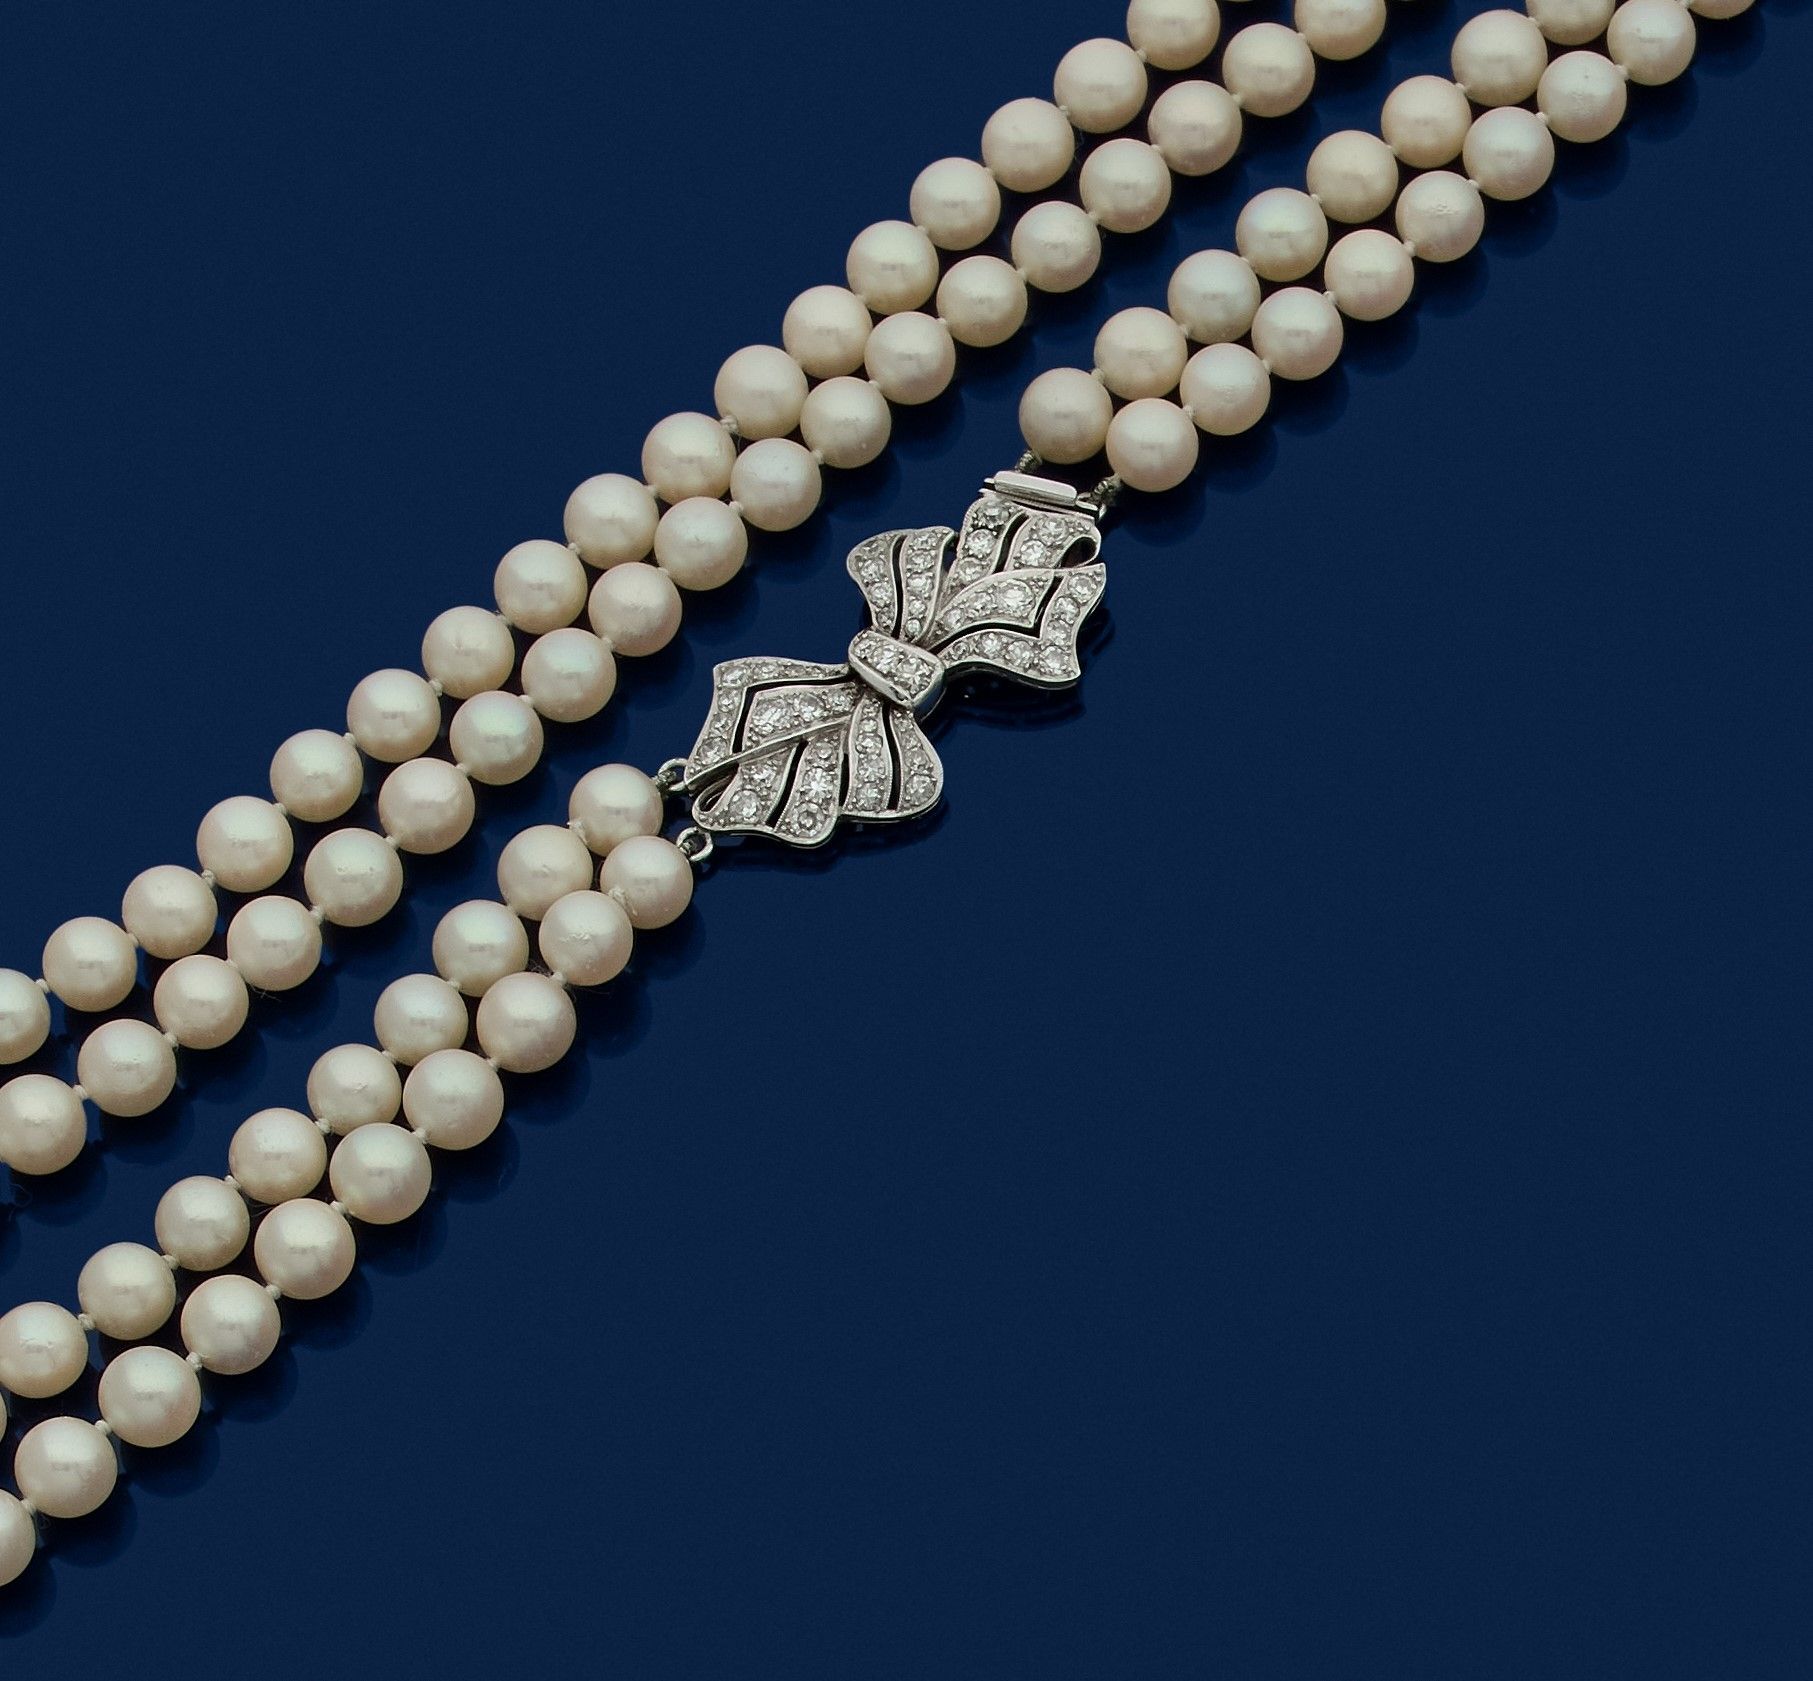 Null 两排养殖珍珠的项链，铂金蝴蝶结扣，镶嵌8/8圆钻。1950年代的法国作品。珍珠的直径：6.8毫米左右。扣子尺寸：3.6 x 1.9毫米左右。长度：50&hellip;